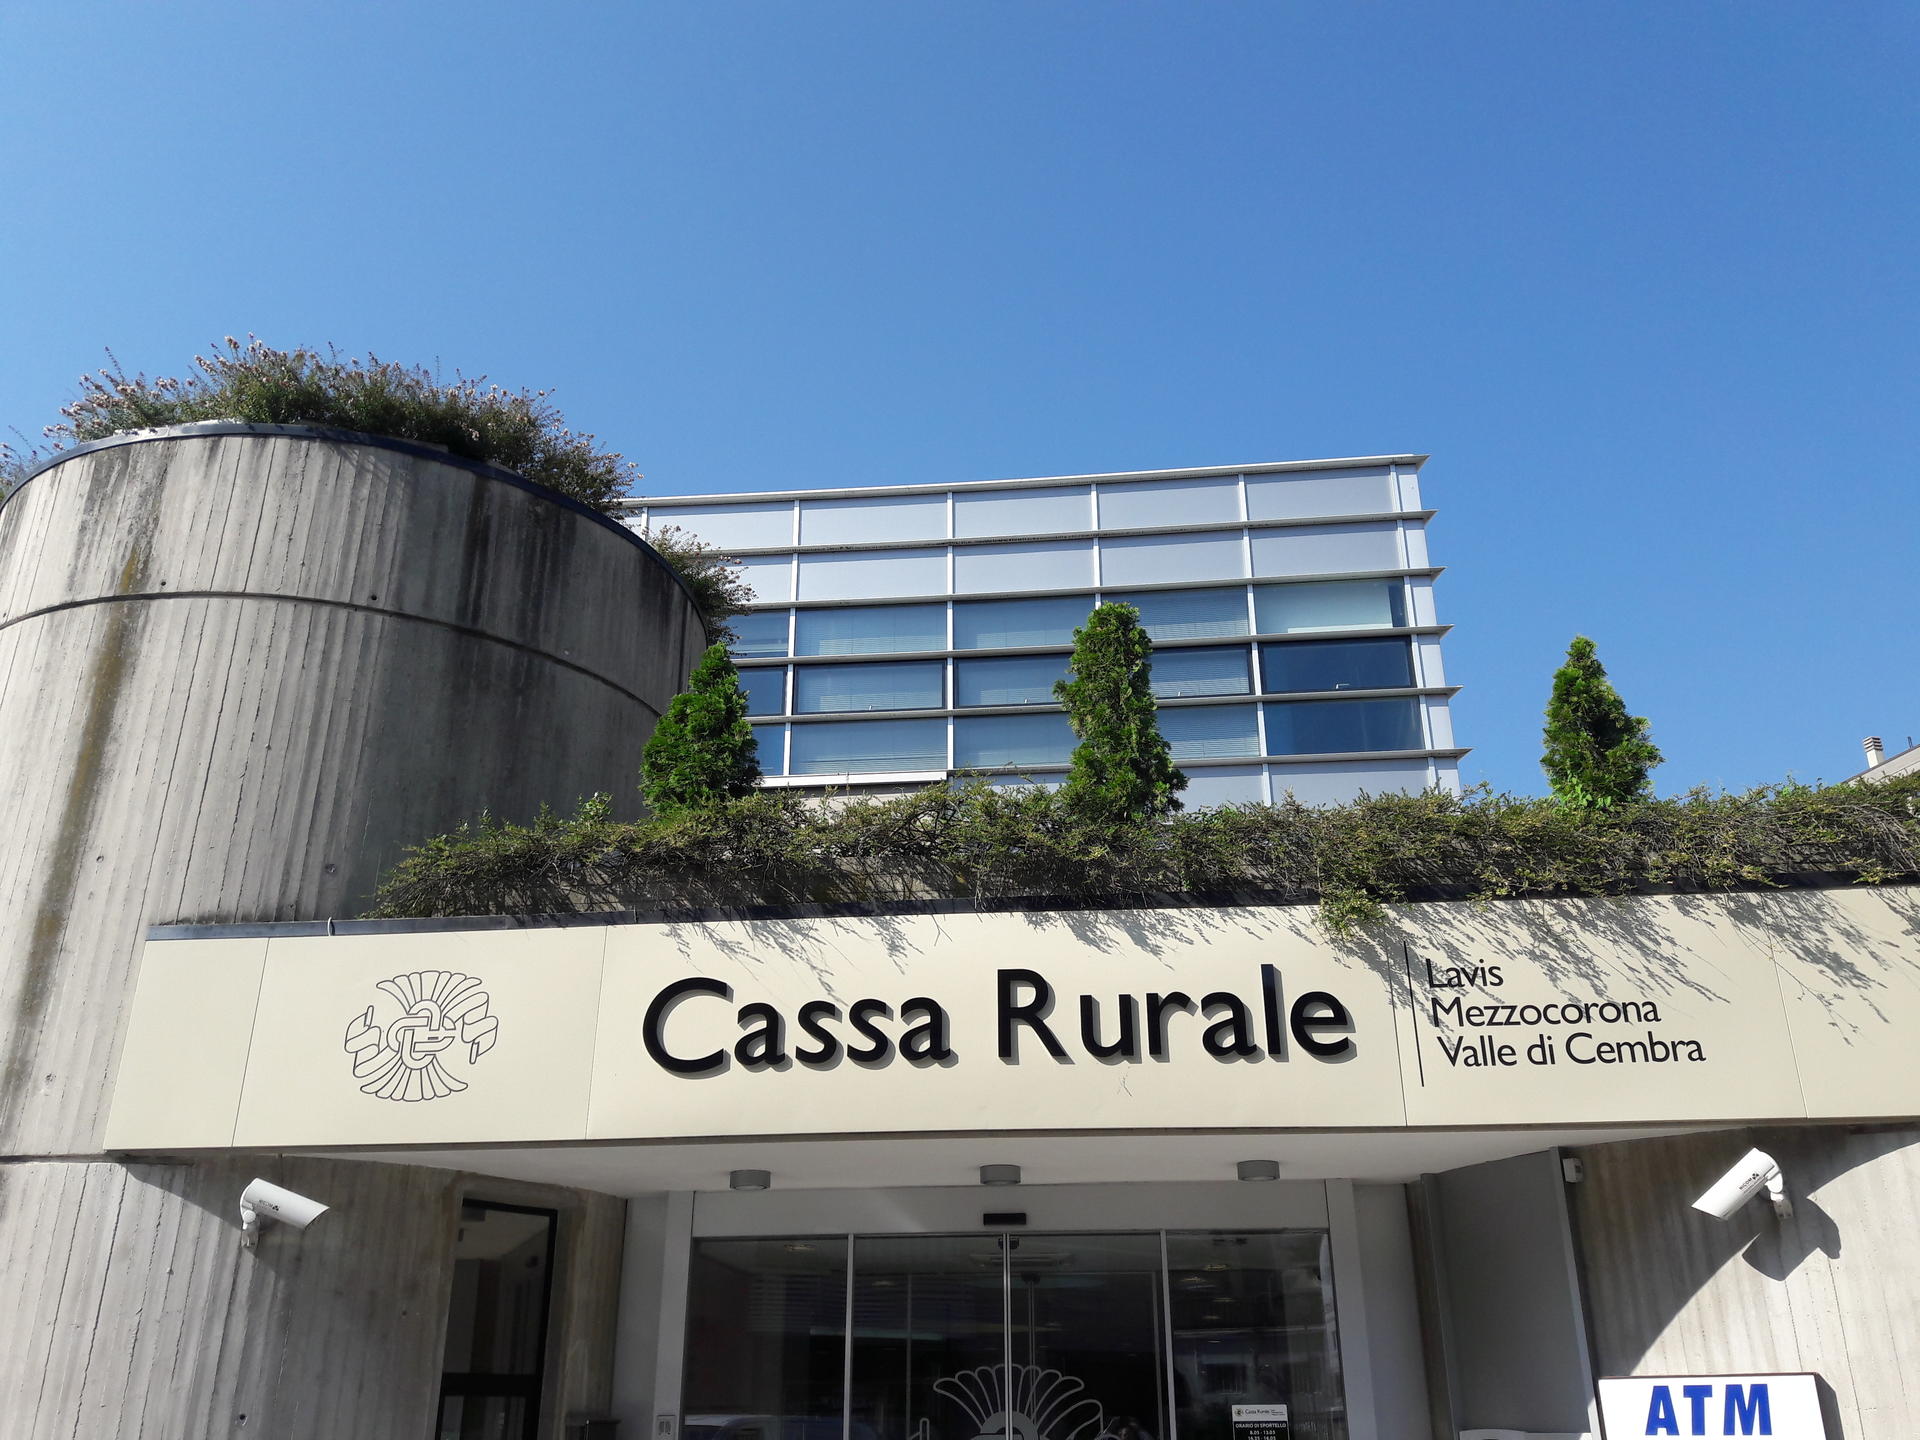 Partire dal risparmio responsabile per sviluppare il tema della finanza etica. Argomenti di particolare significato che rappresenteranno il focus della serata promossa dalla Cassa Rurale Lavis-Mezzocorona-Valle di Cembra.